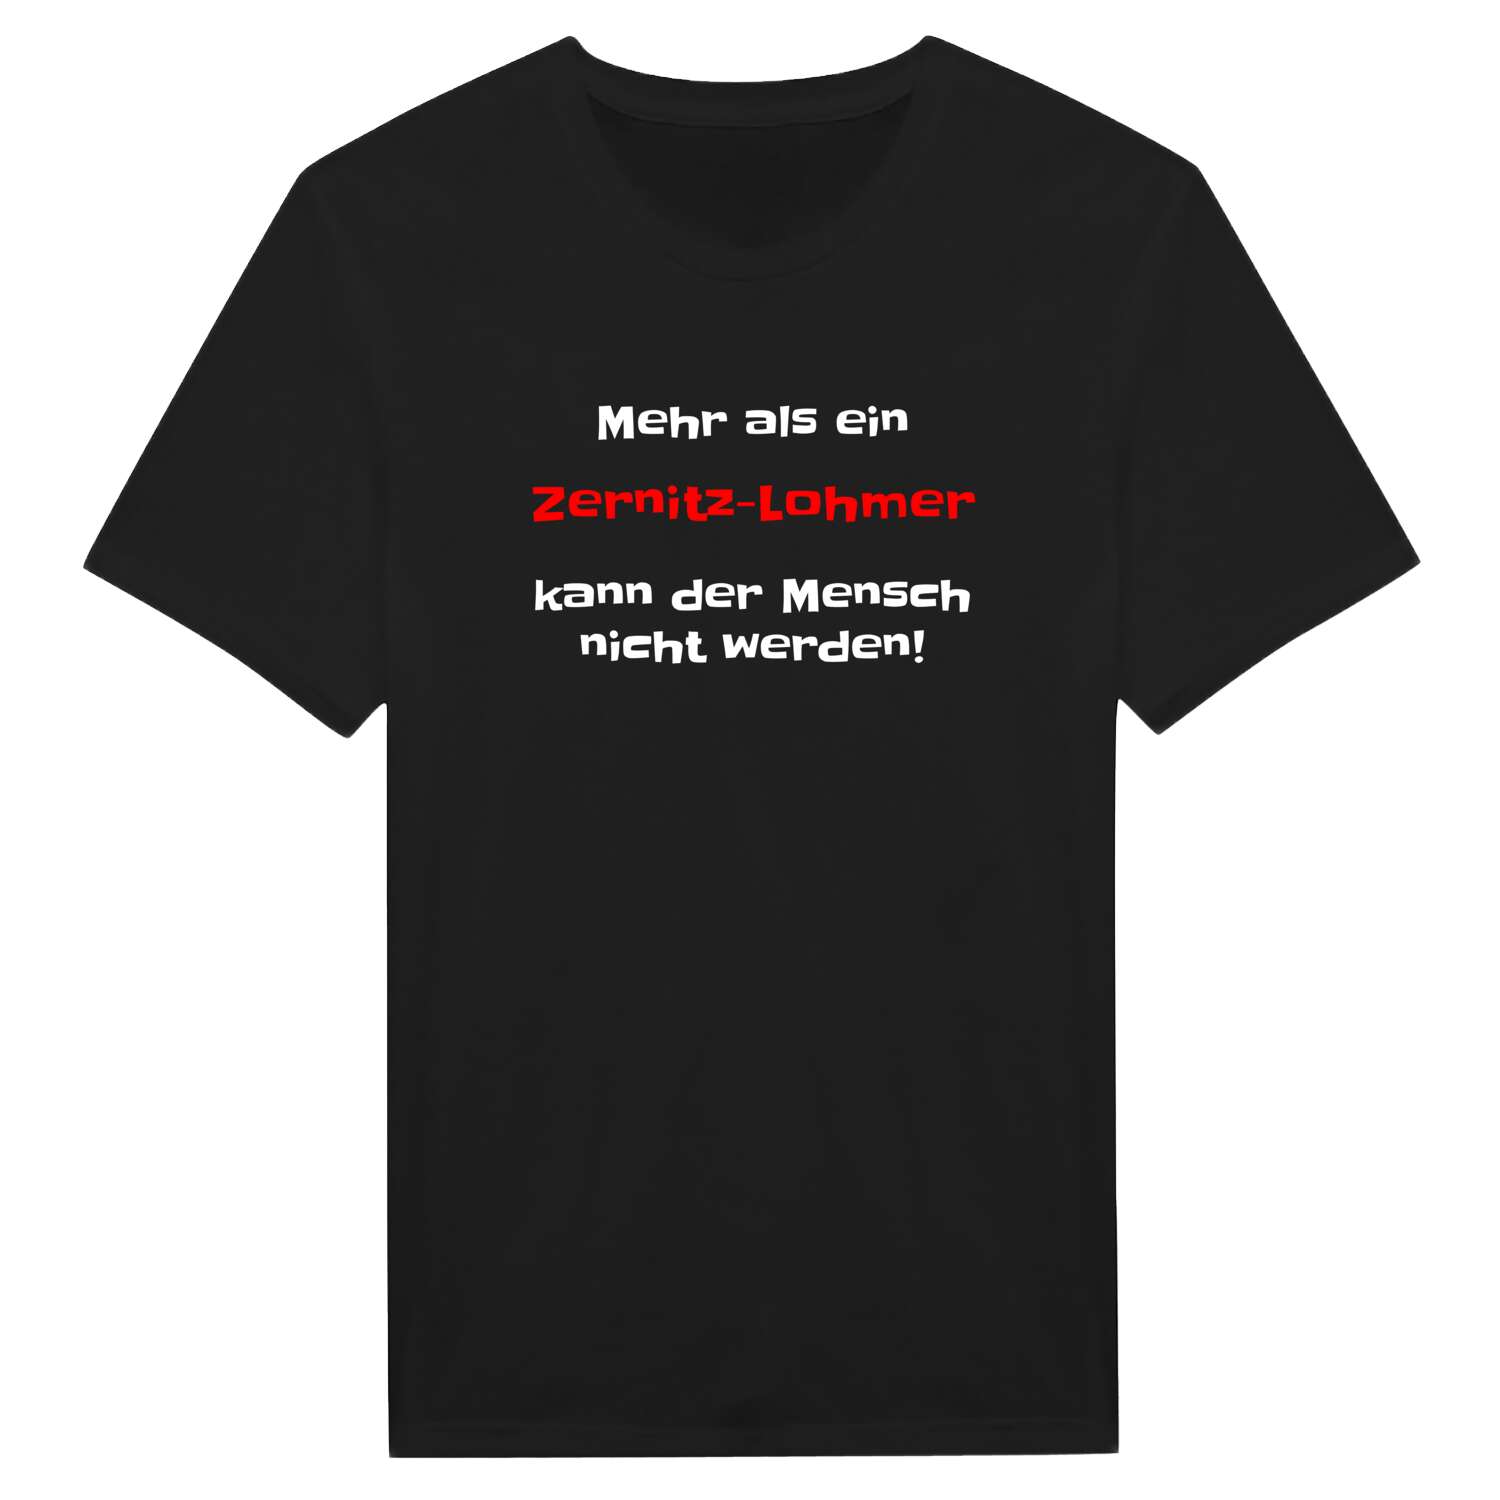 Zernitz-Lohm T-Shirt »Mehr als ein«